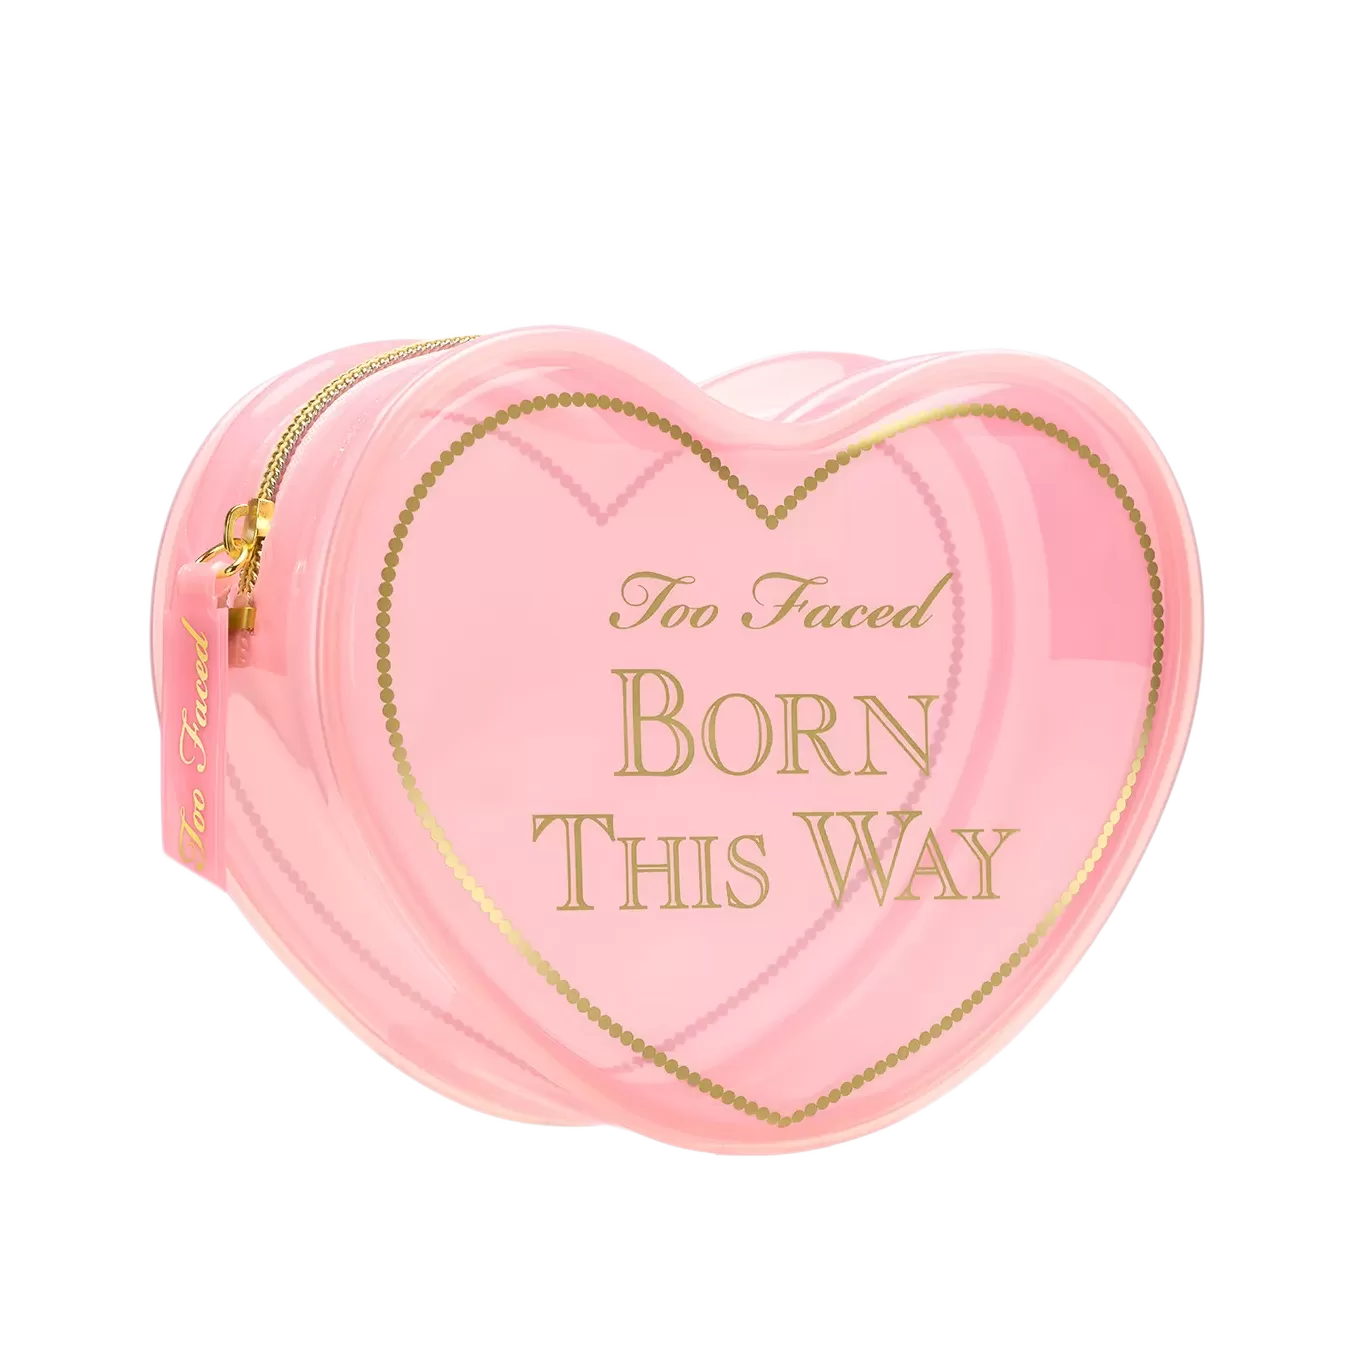 کیف توفیسد Born This Way Makeup Bag اصل + (تخفیف)